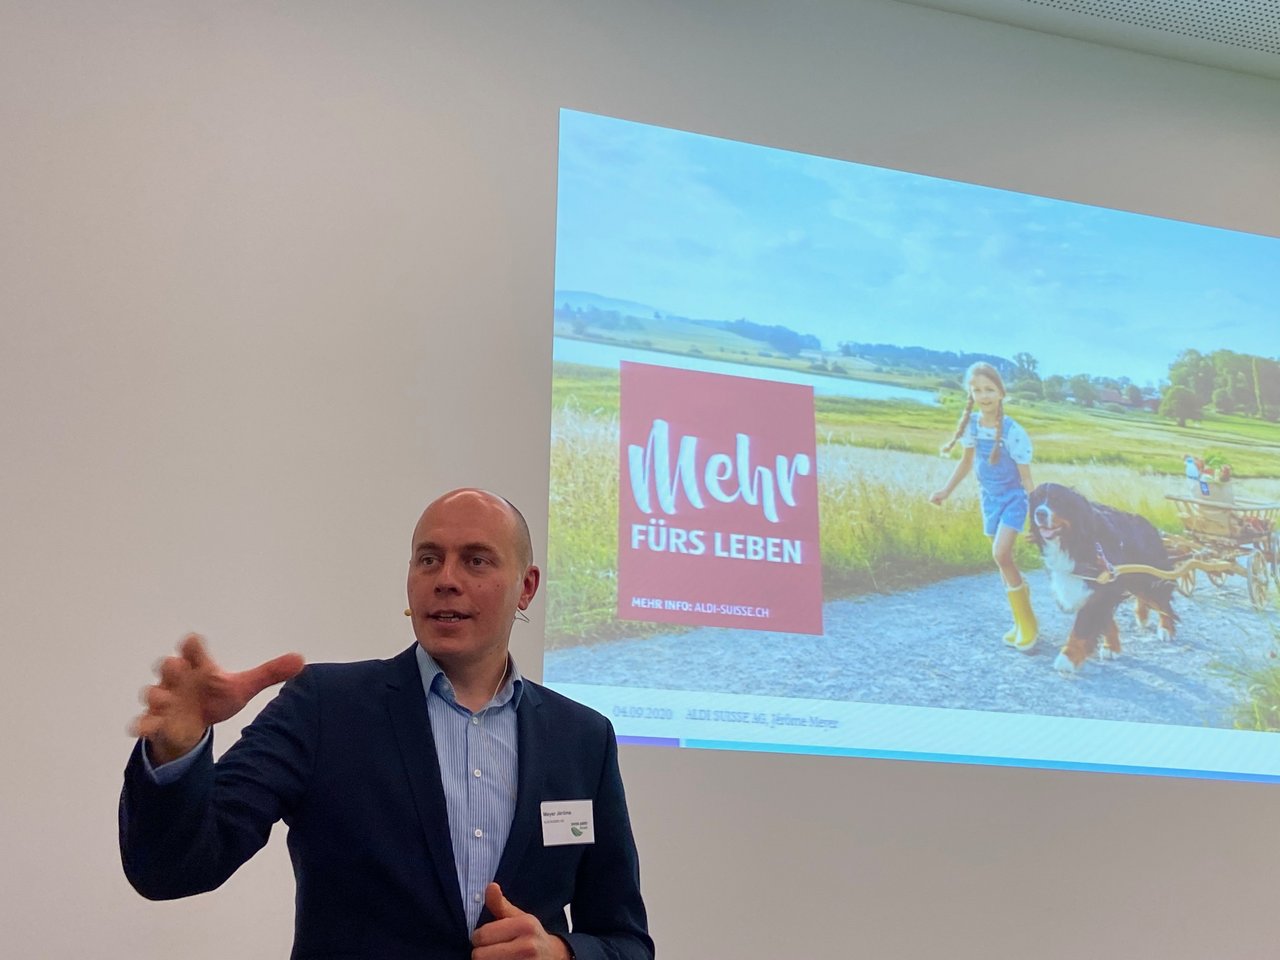 Aldi Suisse-Managing Director Jérôme Meyer erklärte, man wolle die Landwirtschaft nicht idyllisieren, sondern möglichst nachhaltige Produkte mit Swissness zum günstigsten Preis anbieten. (Bild akr)